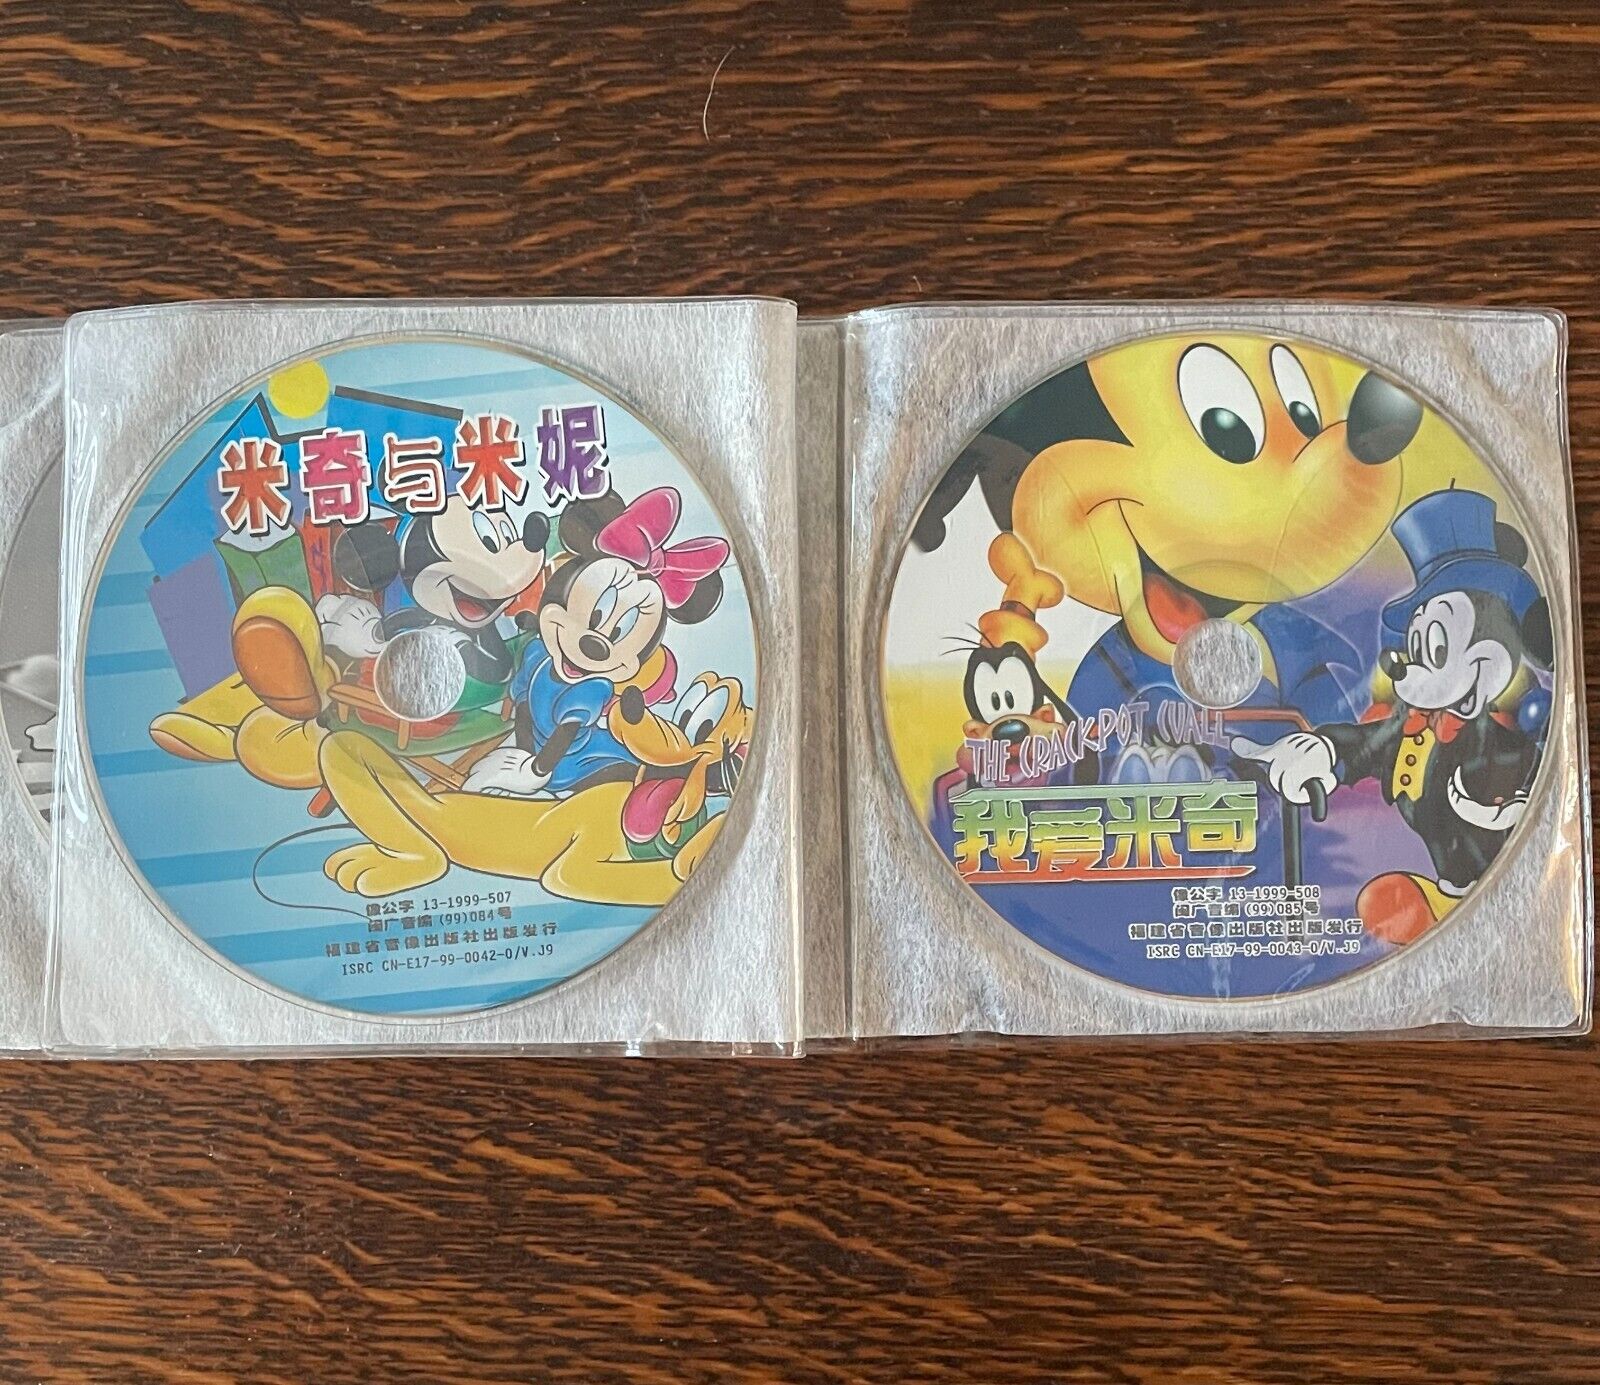 Rare 1990s Chinese Disney CDs